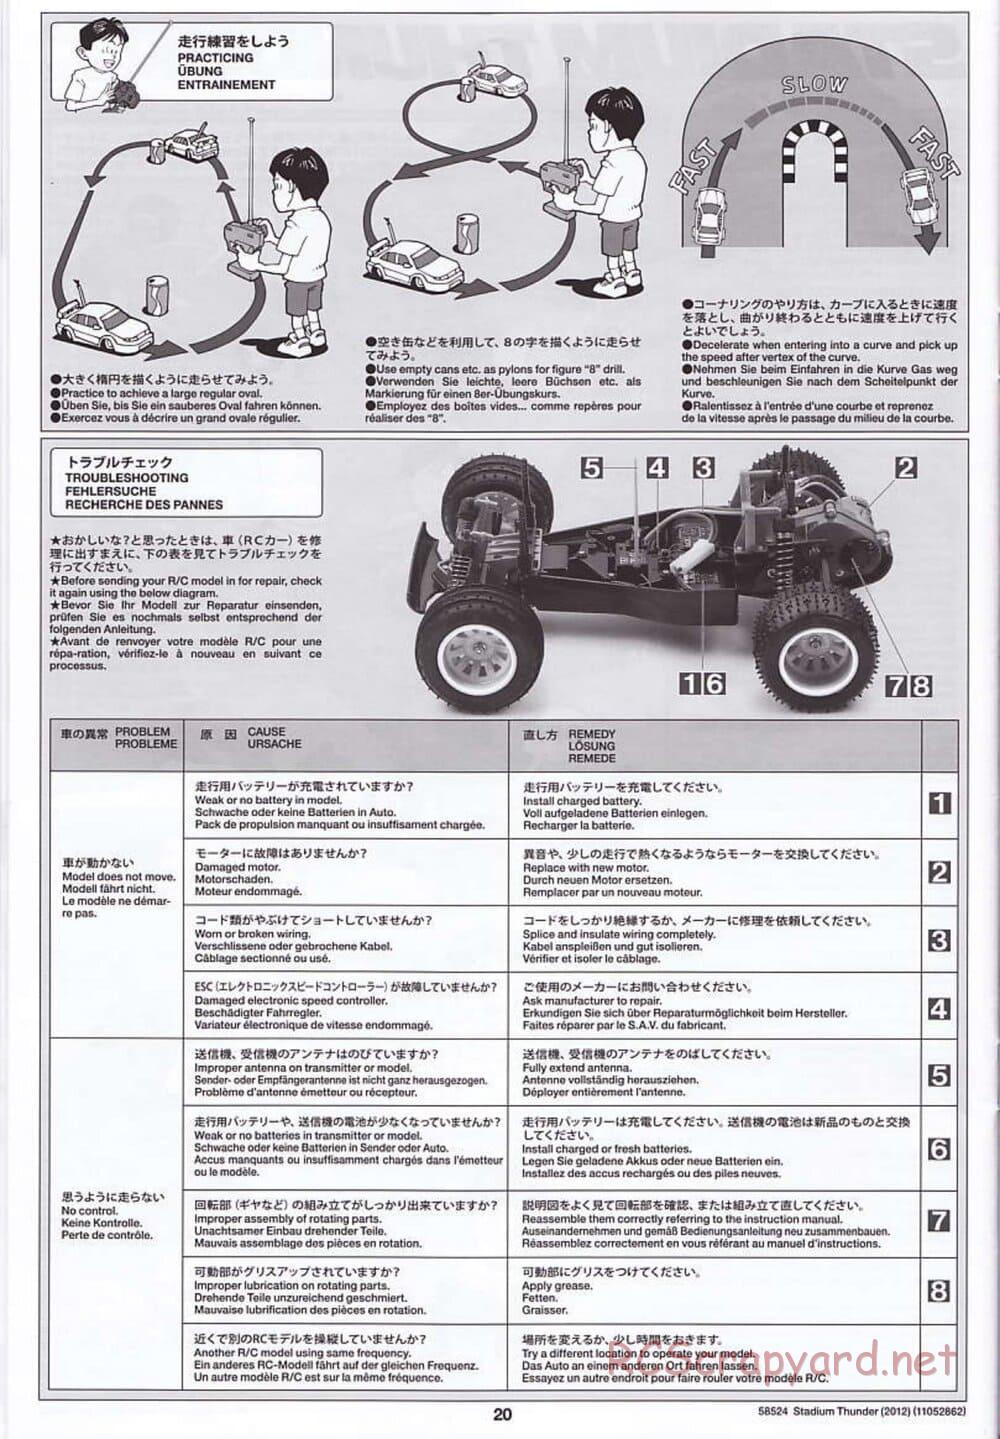 Tamiya - Stadium Thunder 2012 - FAL Chassis - Manual - Page 20